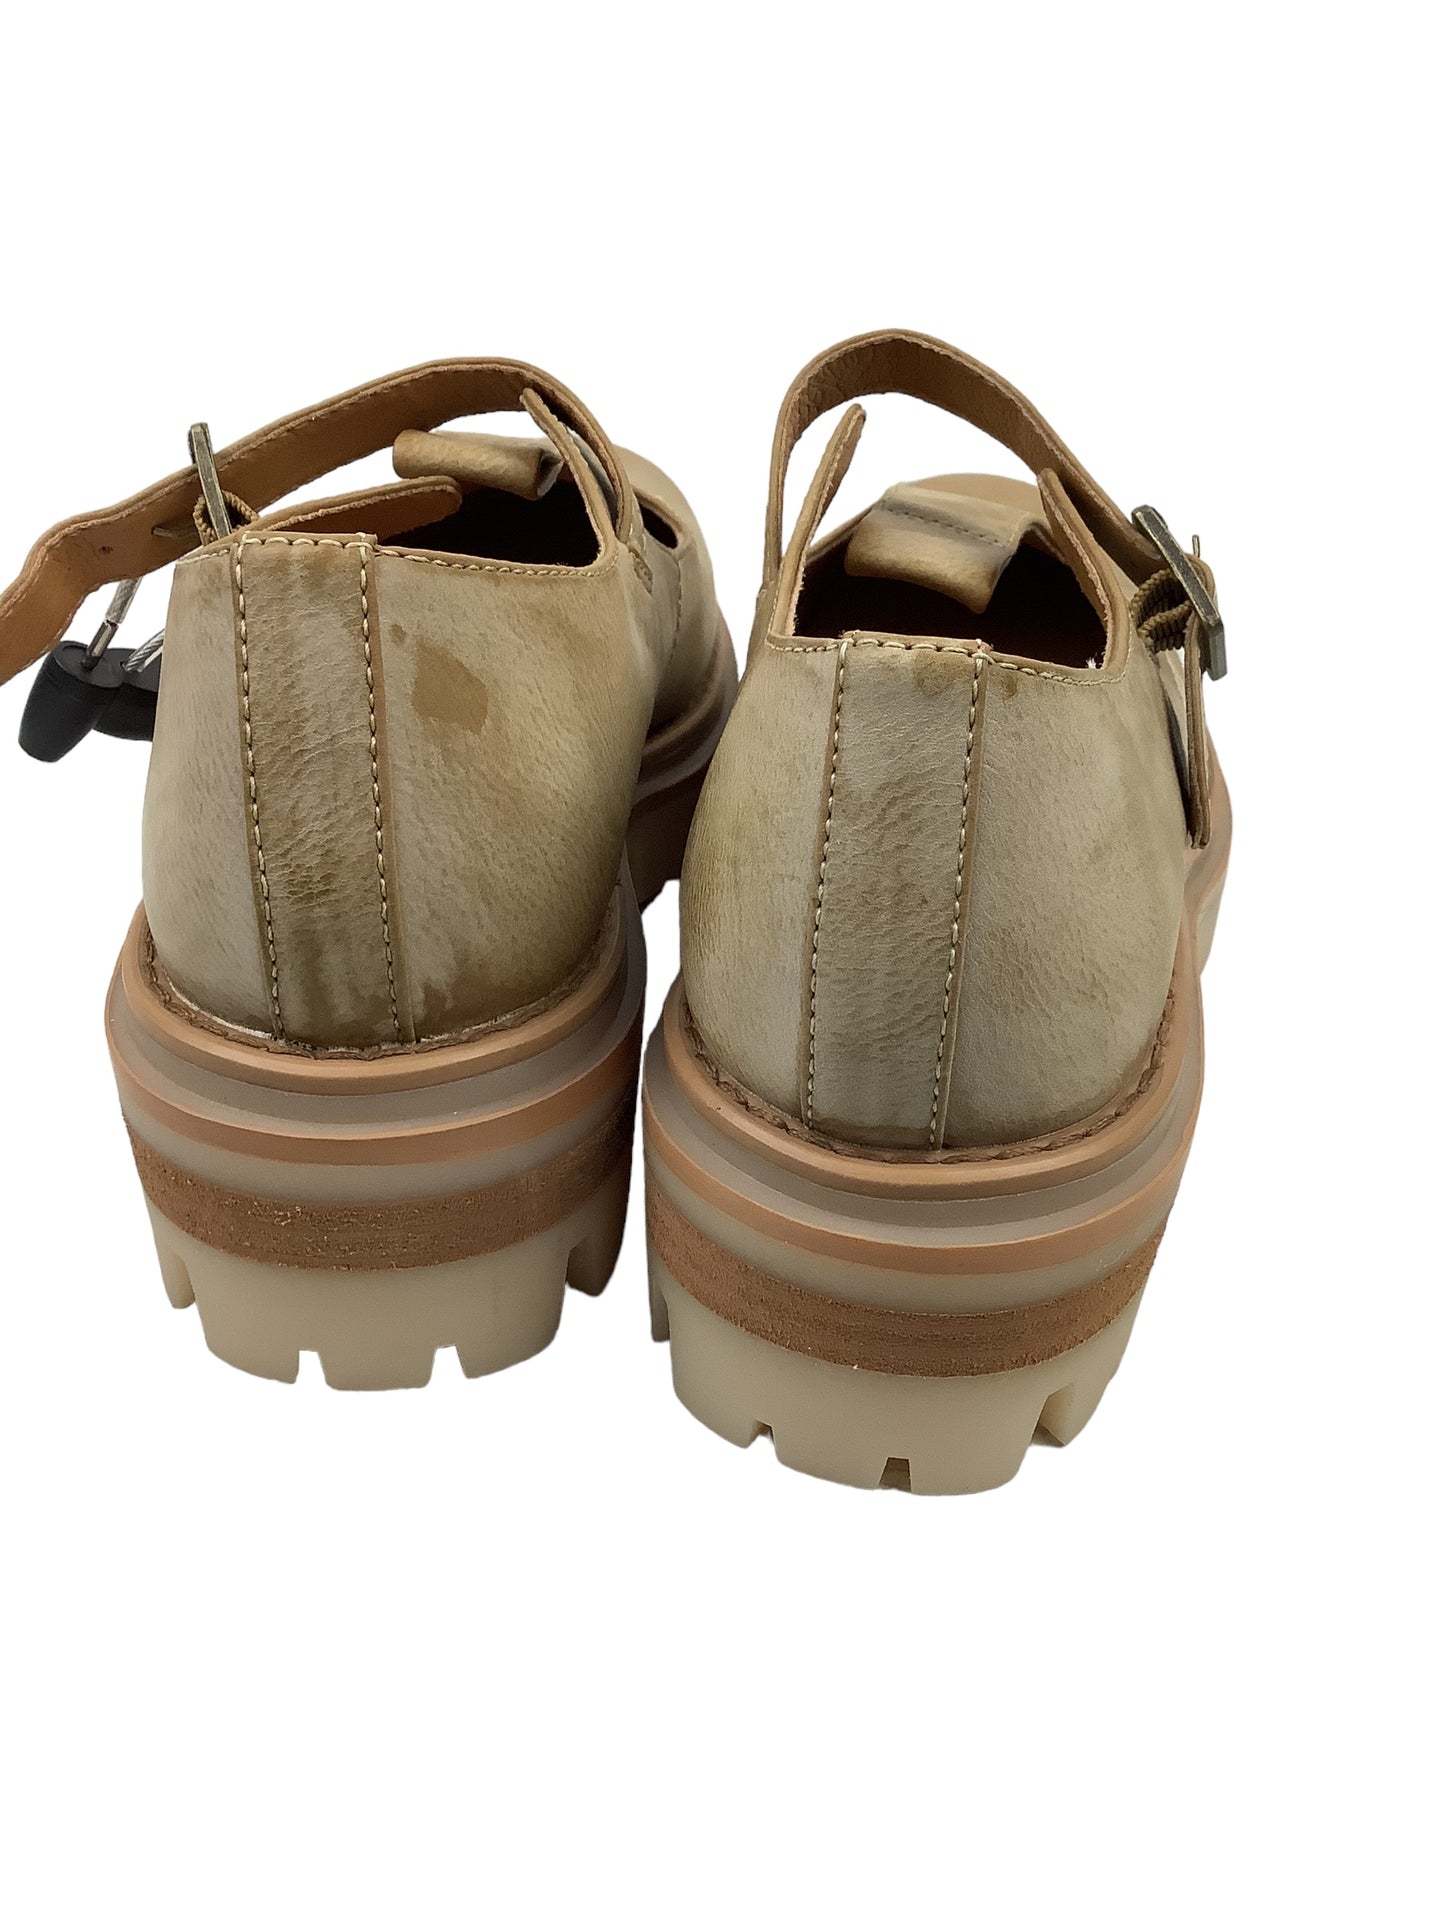 Shoes Heels Platform By Korks  Size: 8.5